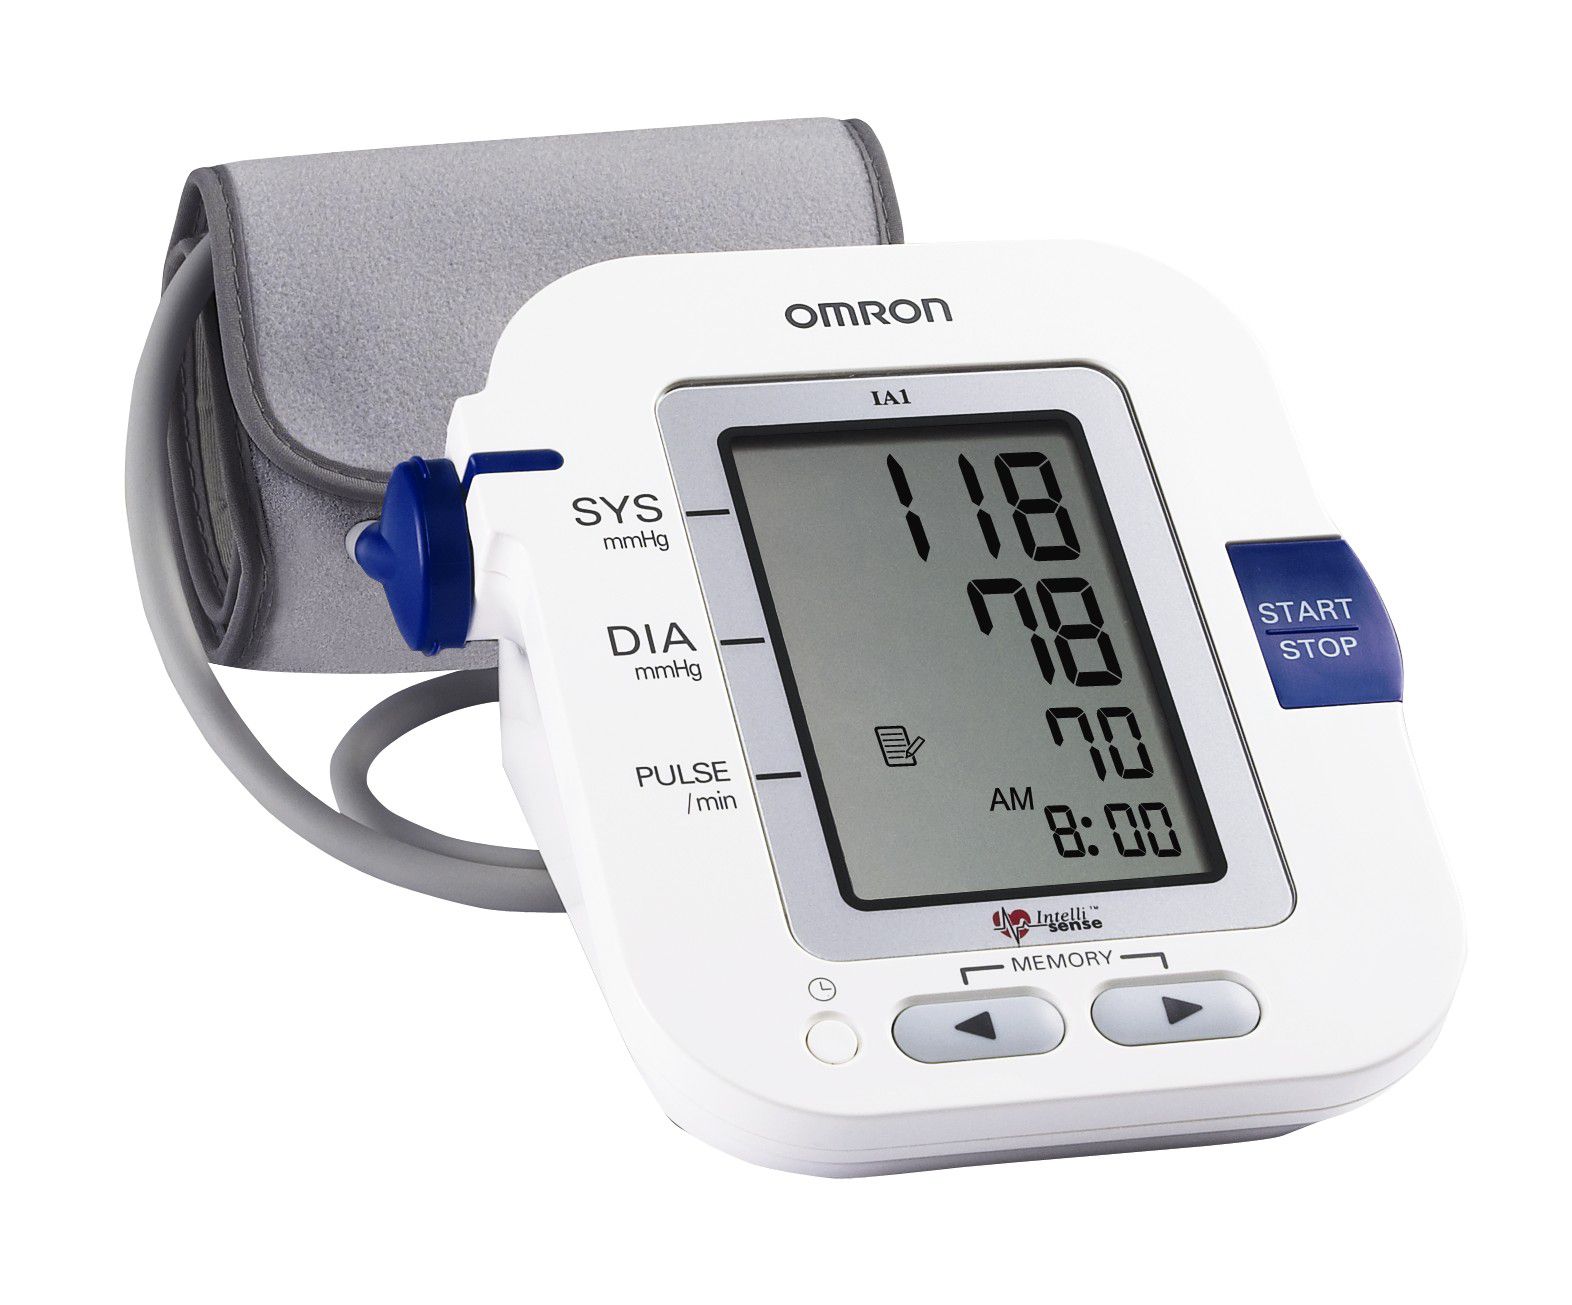 Máy đo huyết áp của hãng Omron đang là sản phẩm được mua nhiều nhất trên thị trường hiện nay.